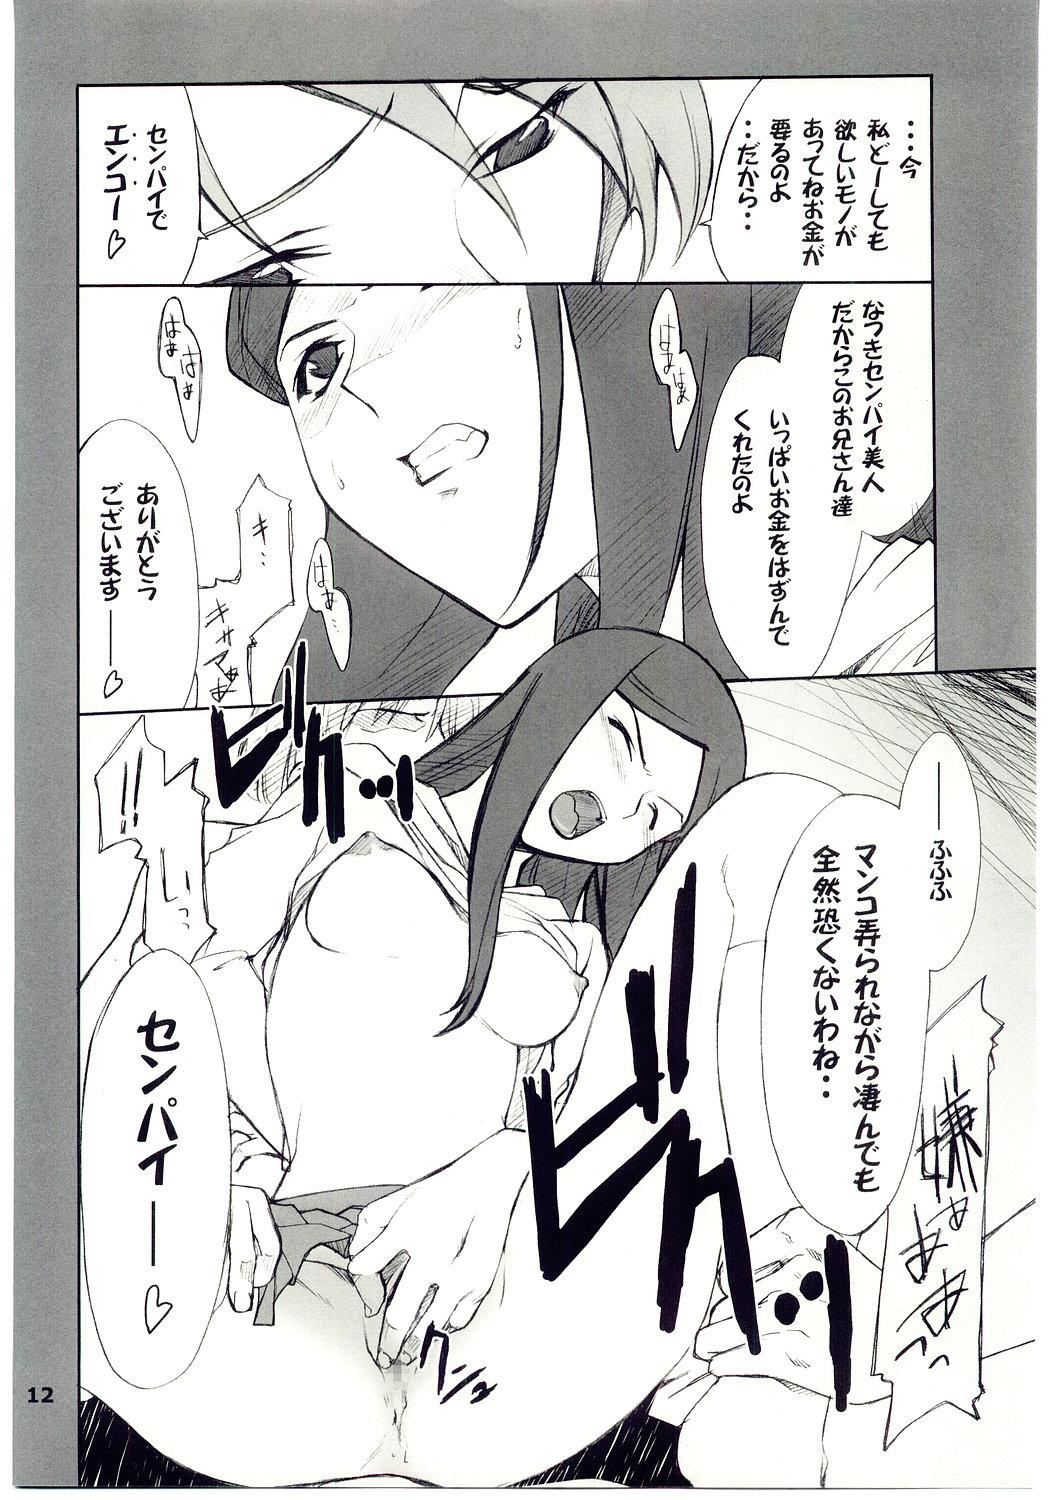 Negao Kuga-chan to Iroiro - Mai-hime Dicks - Page 11